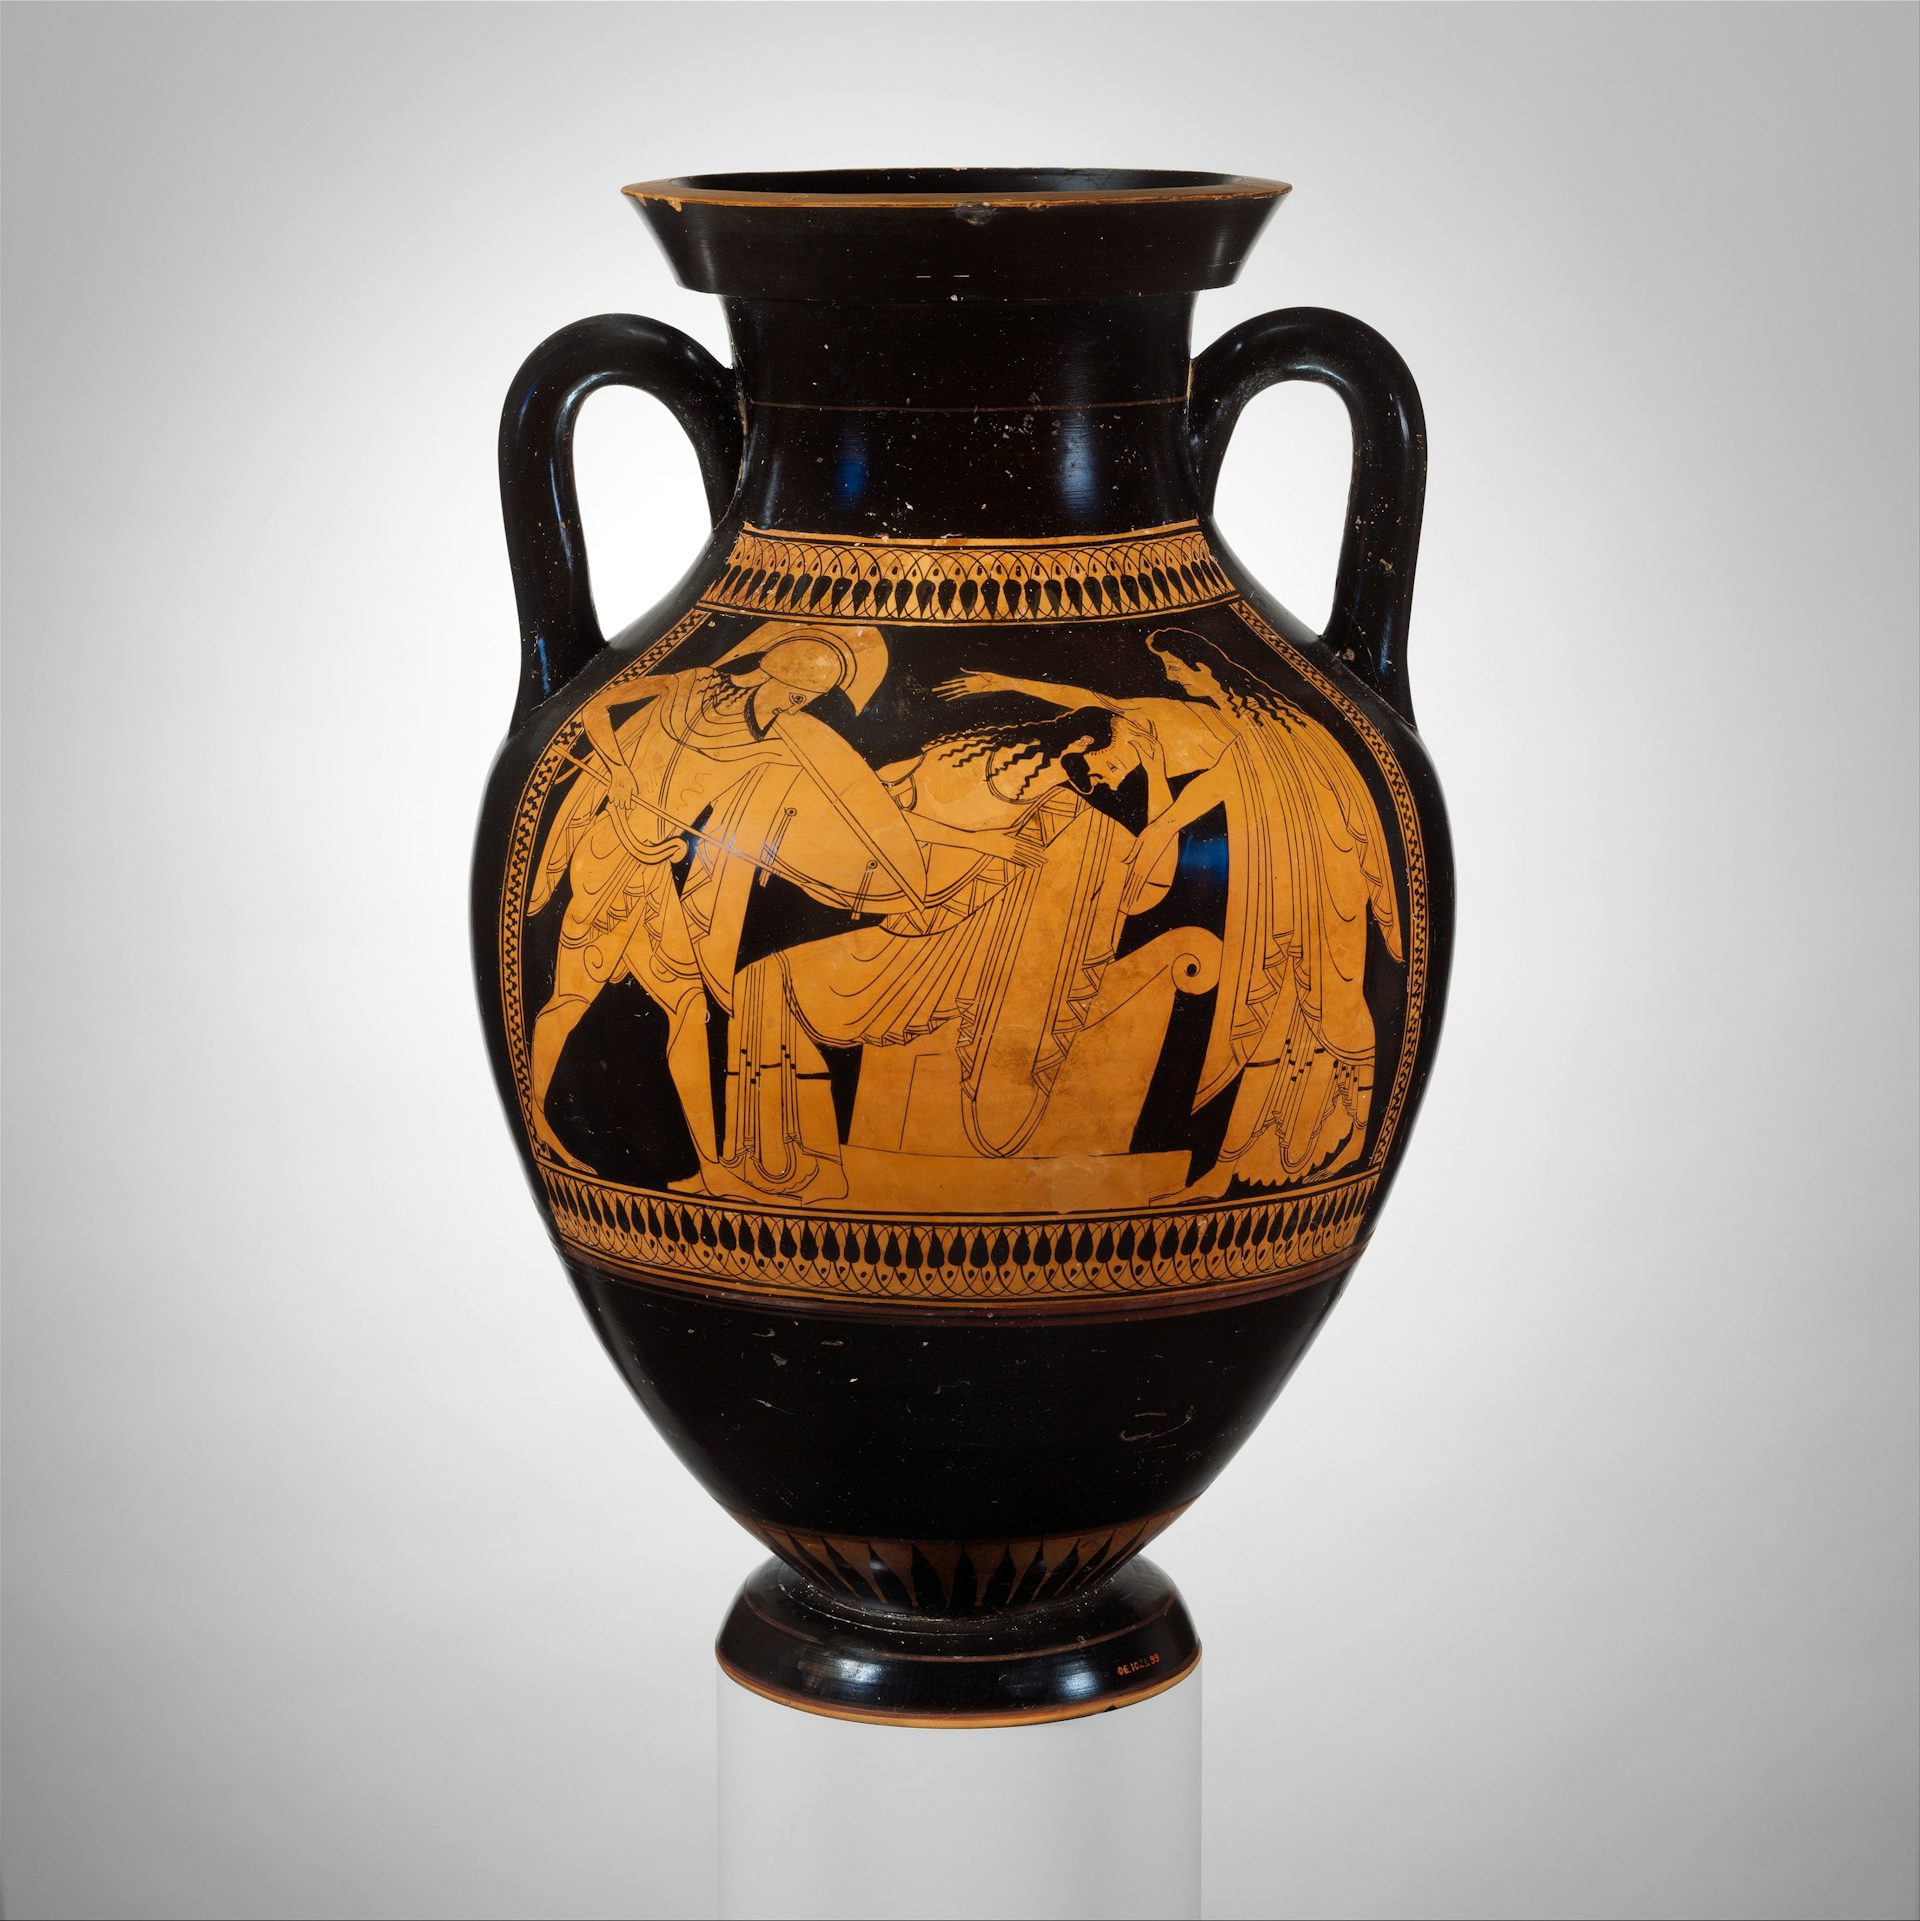 Vase painting showing Neoptolemus (left) killing Priam (center)